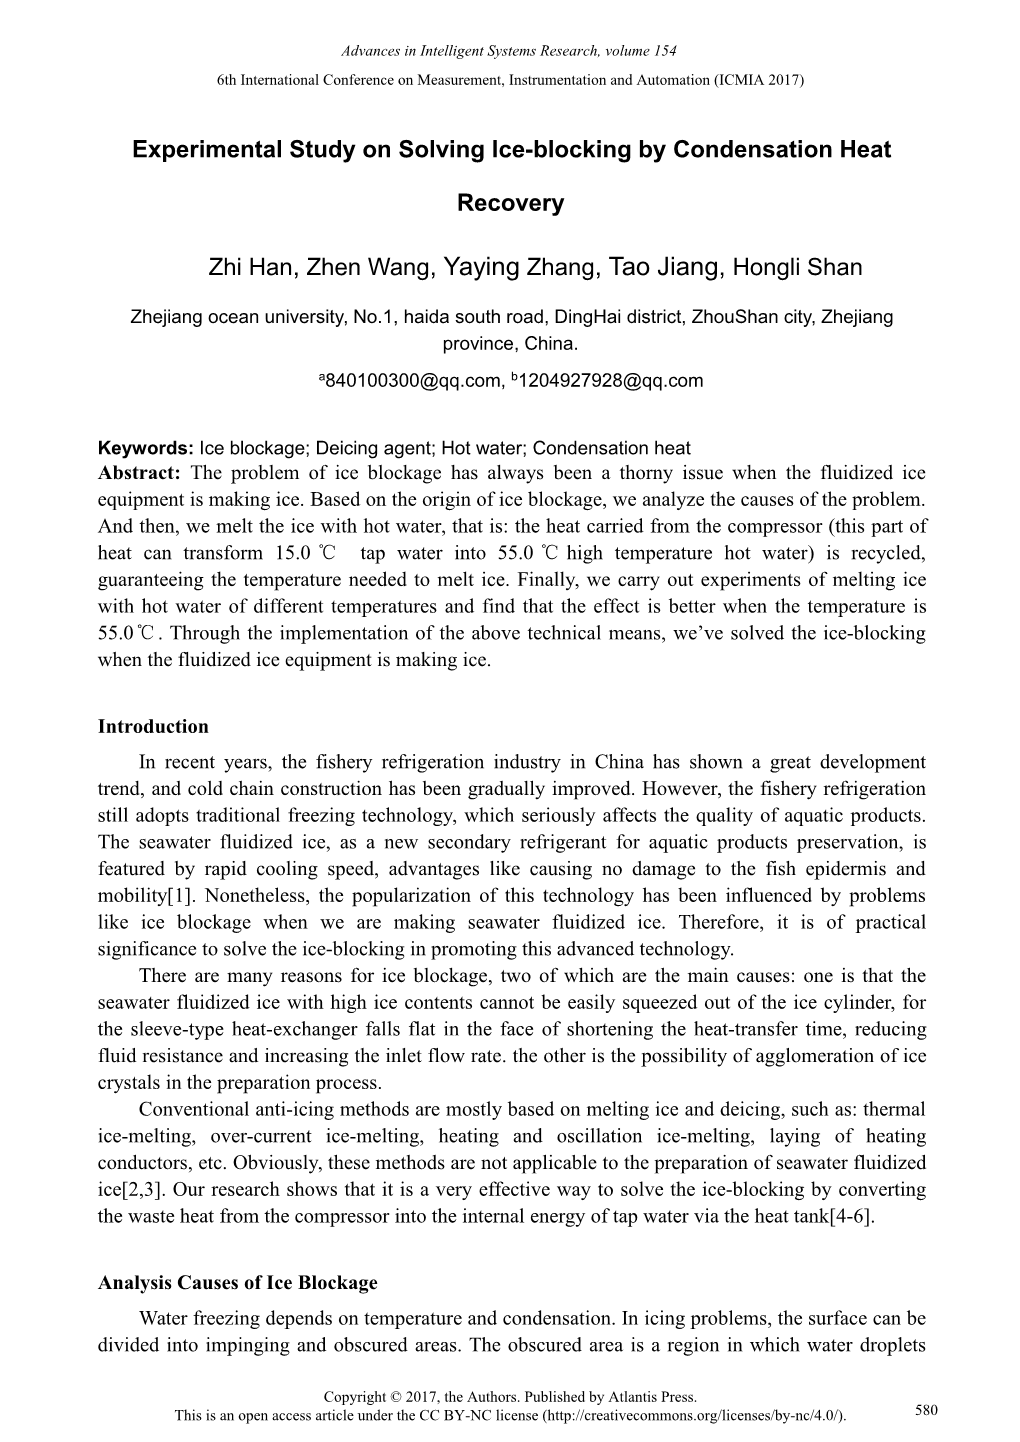 Yaying Zhang, Tao Jiang, Hongli Shan